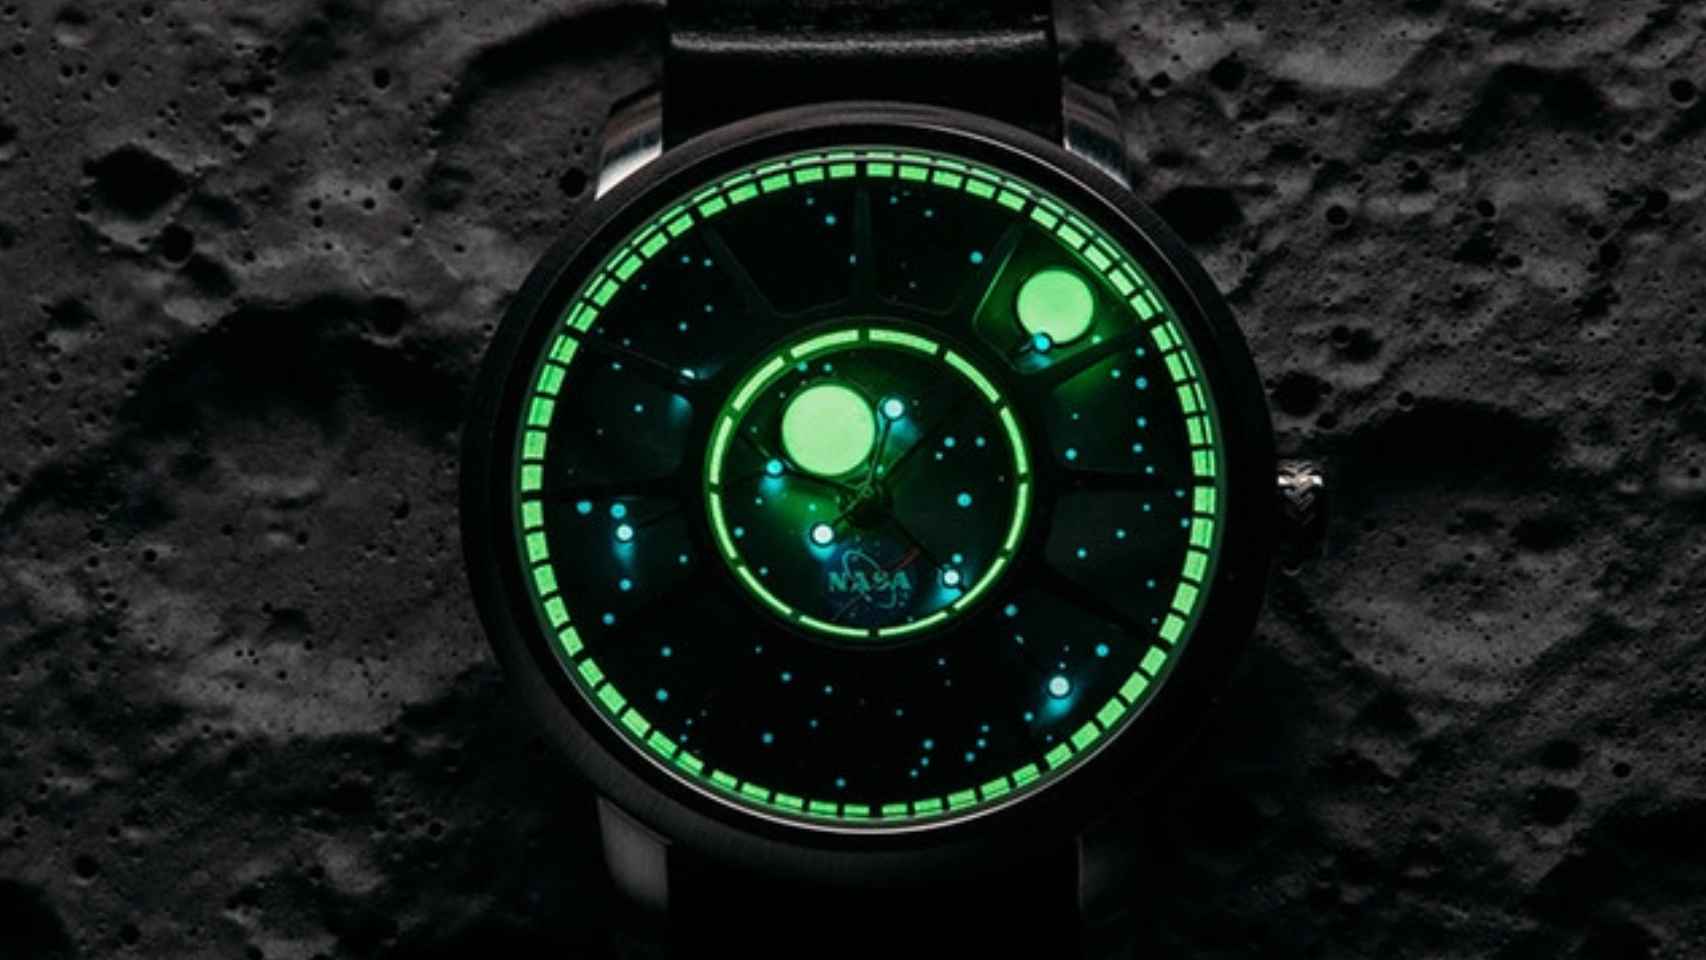 El reloj mostrando las fases lunares.